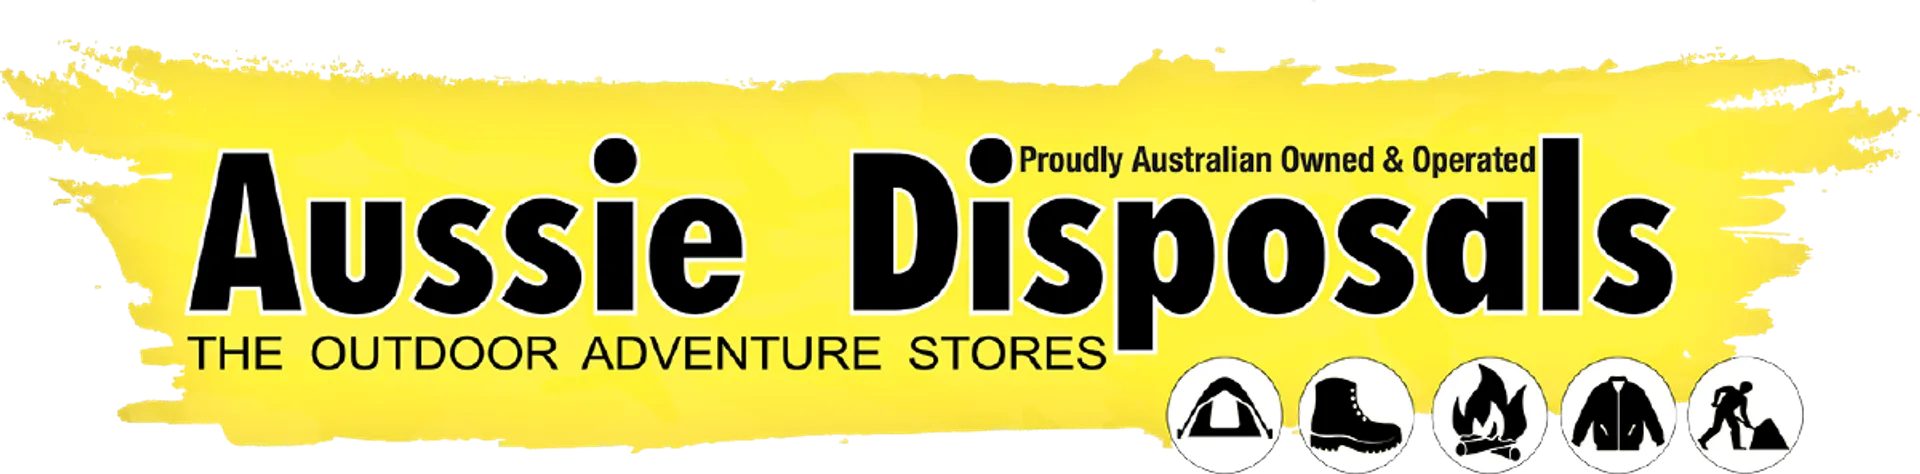 AUSSIE DISPOSALS logo